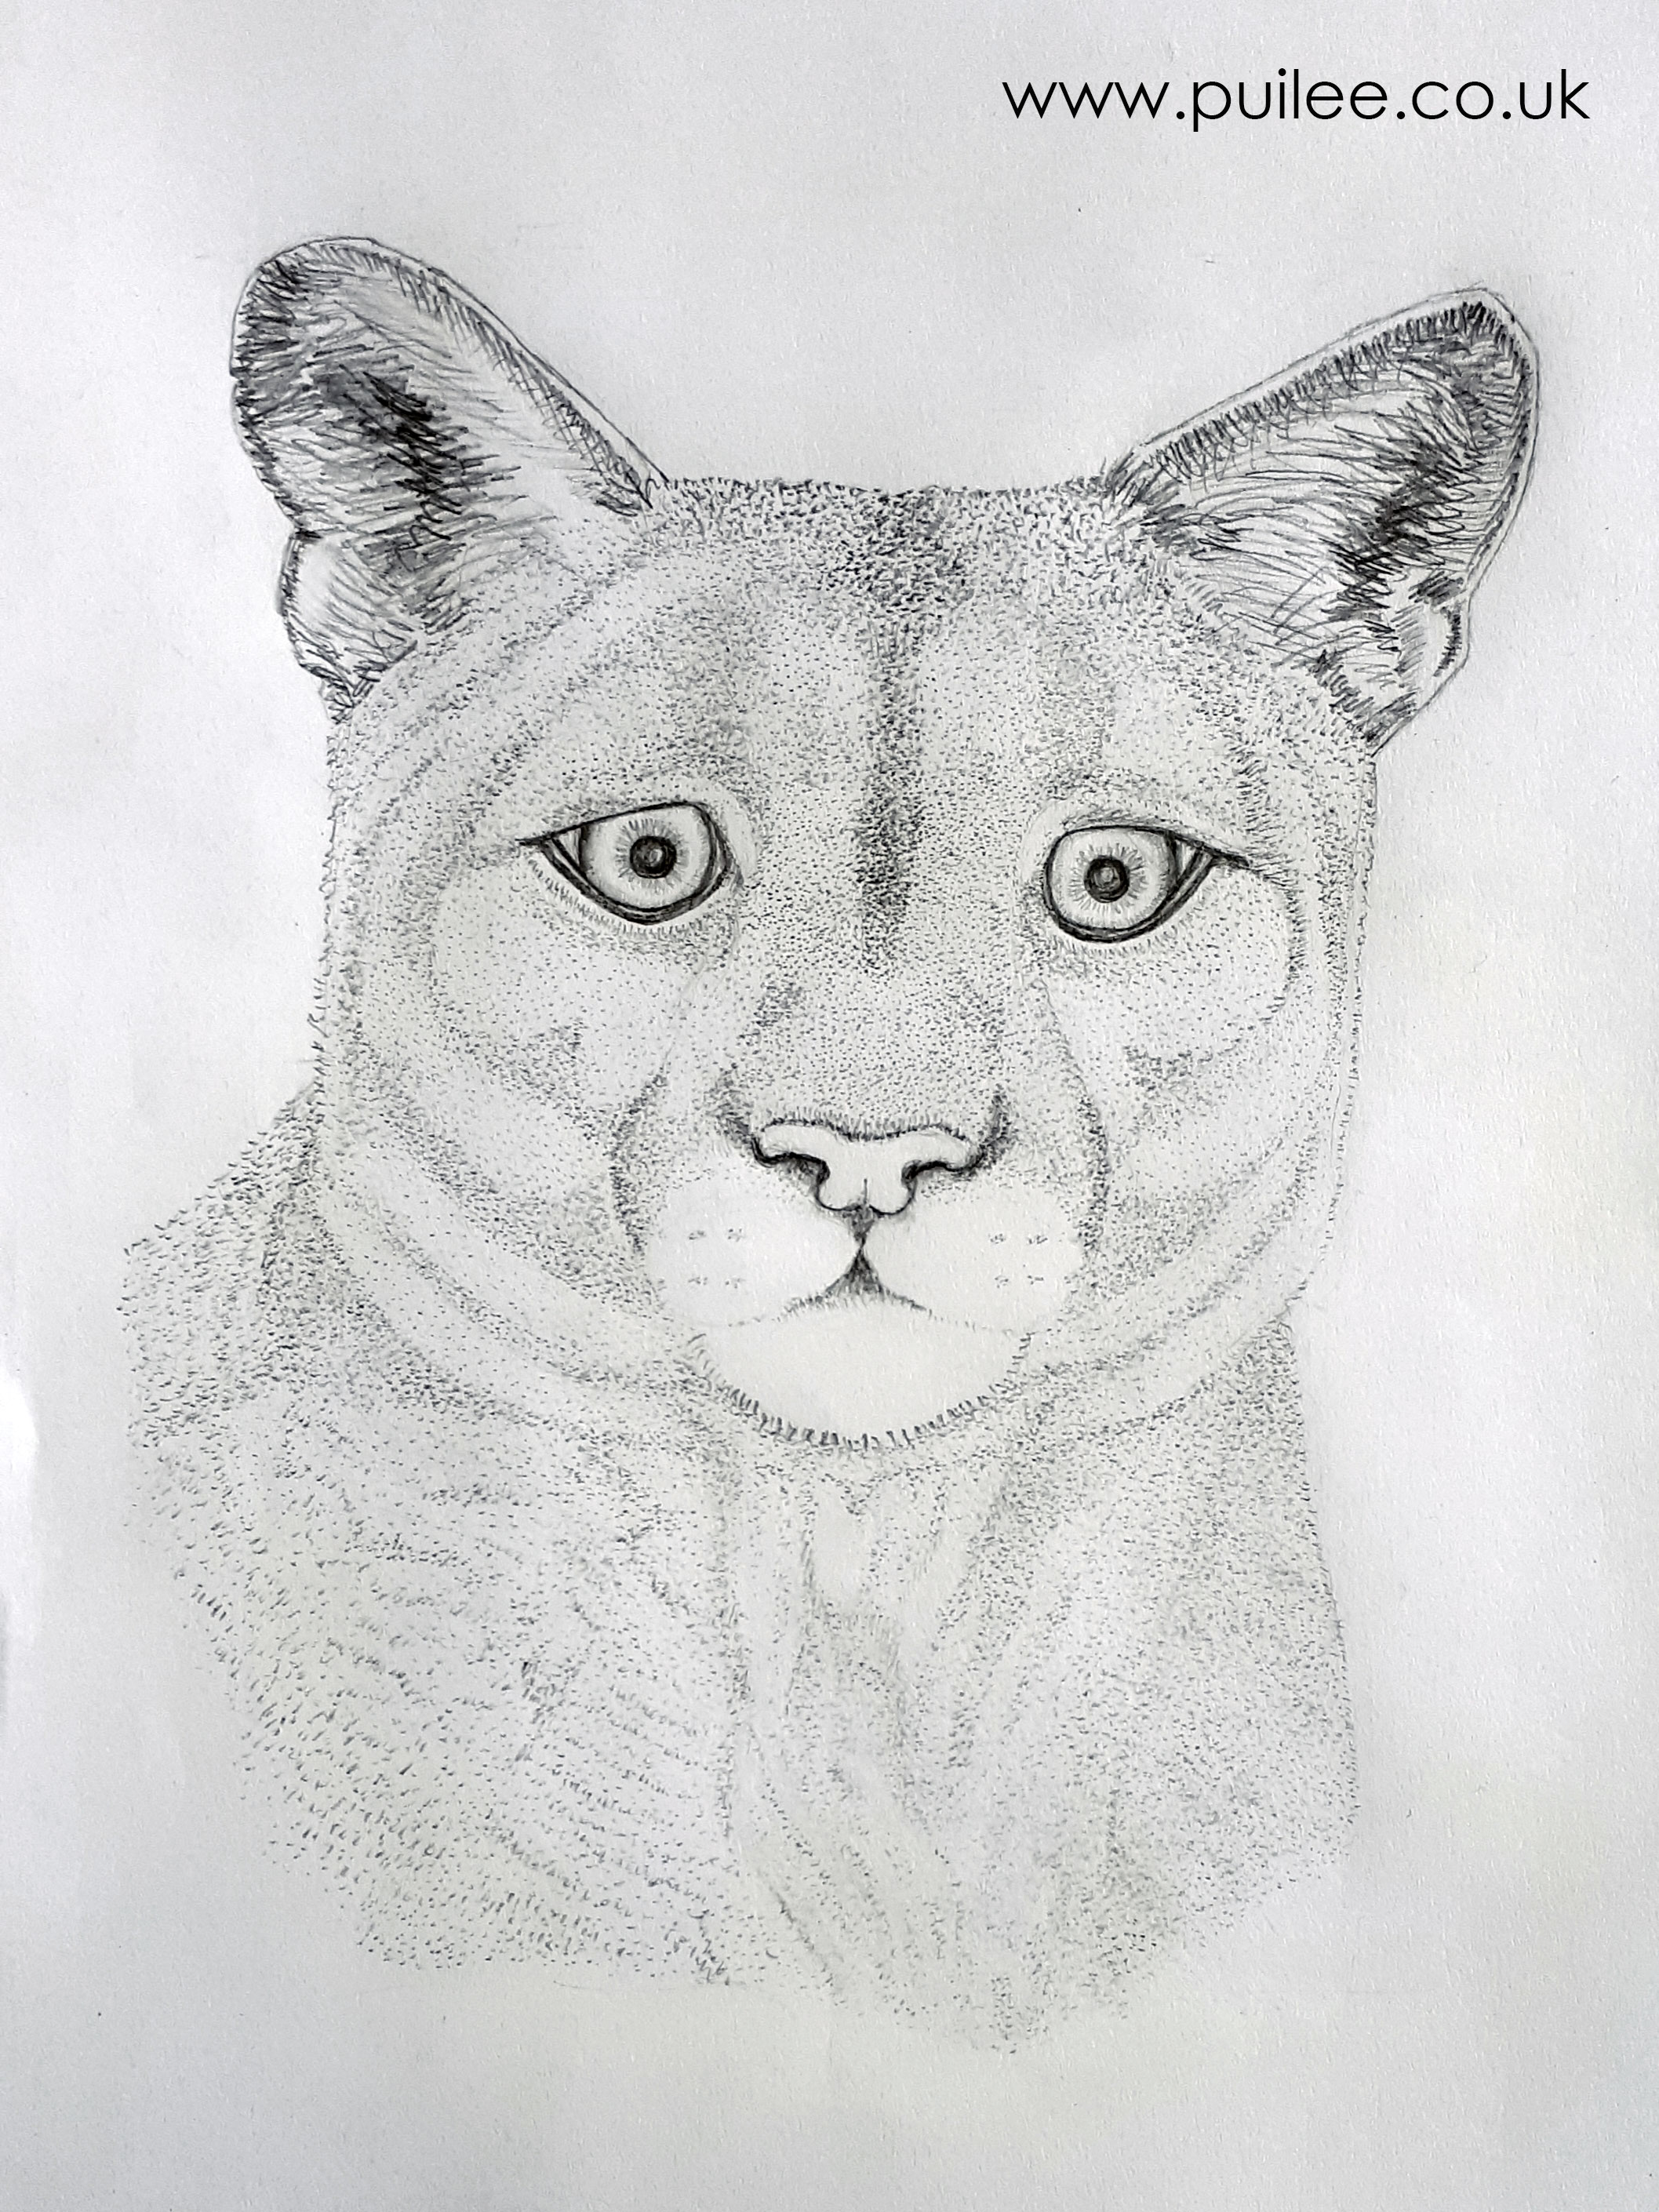 Puma (2020) -pencil on paper - Artist Pui Lee